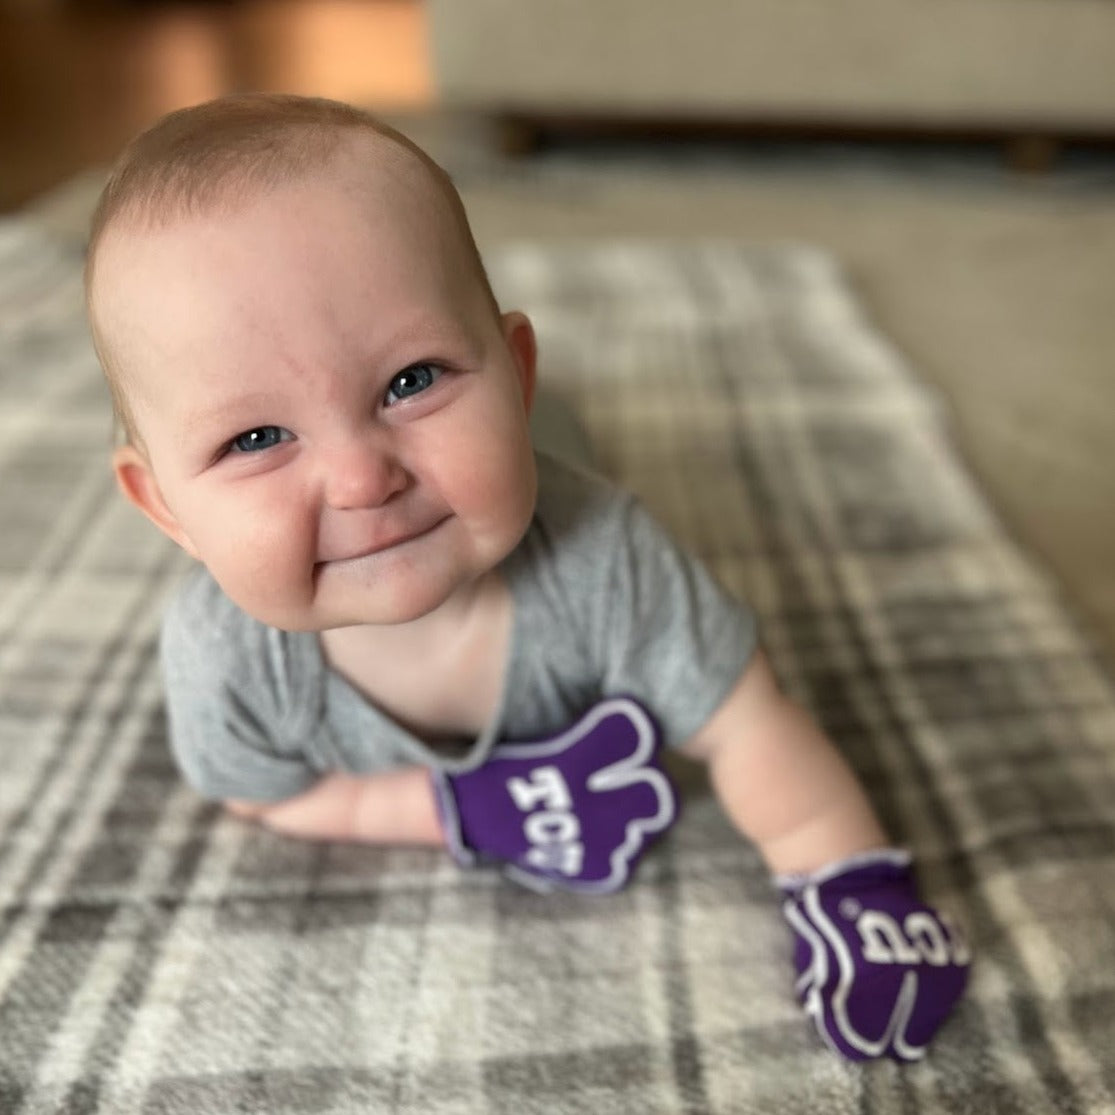 Infant wearing TCU Go Frogs baby mittens in purple